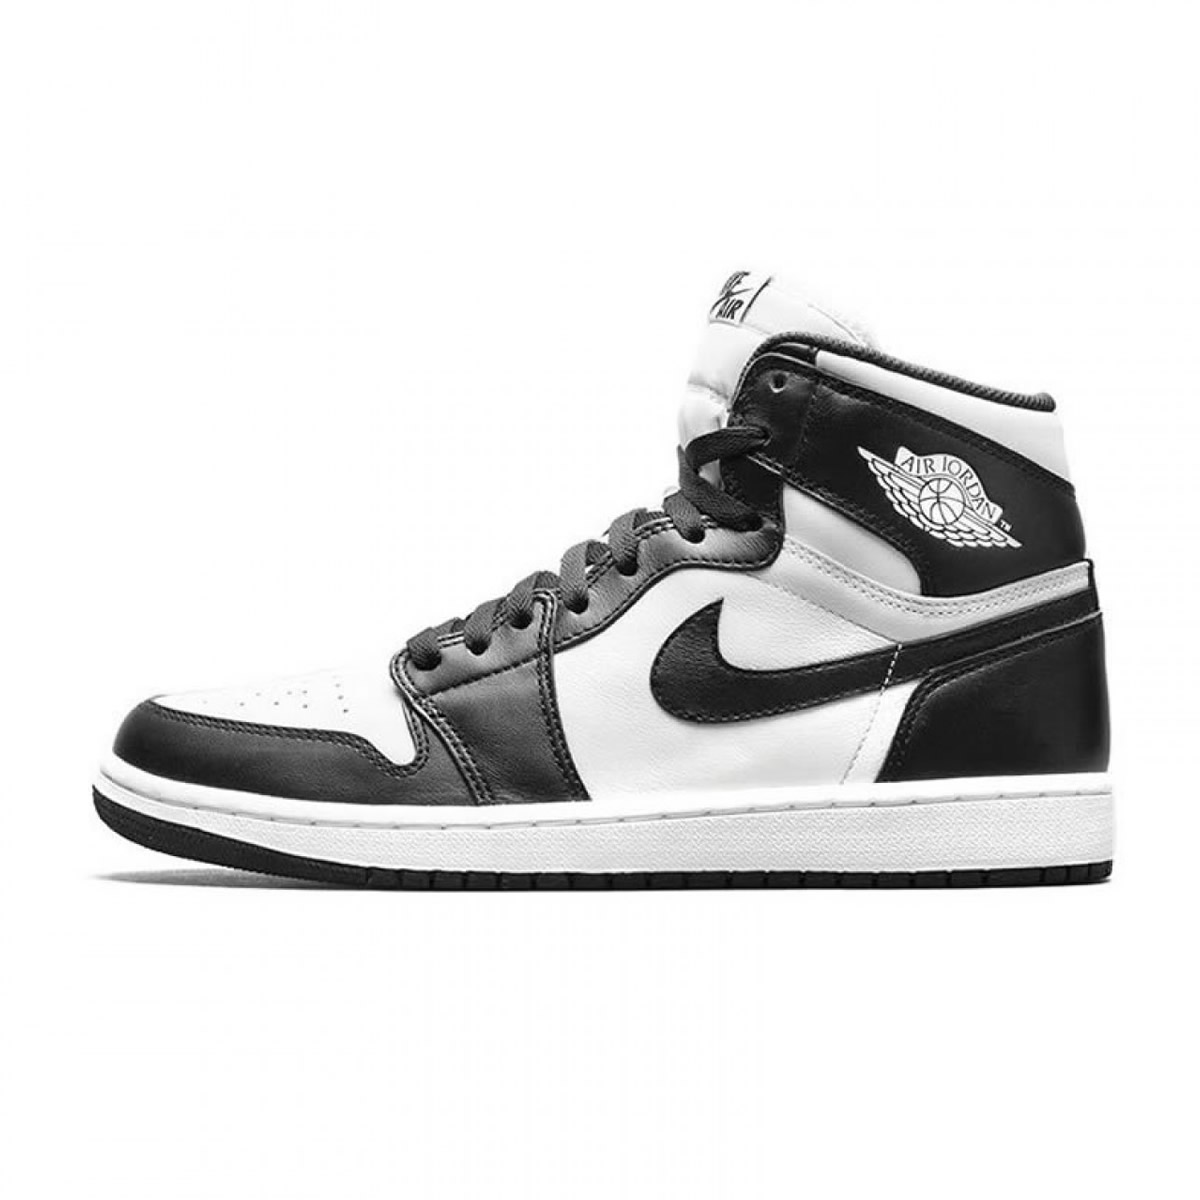 Nike Air Jordan 1 Retro High Og Oreo Black White 555088 010 1 - kickbulk.org